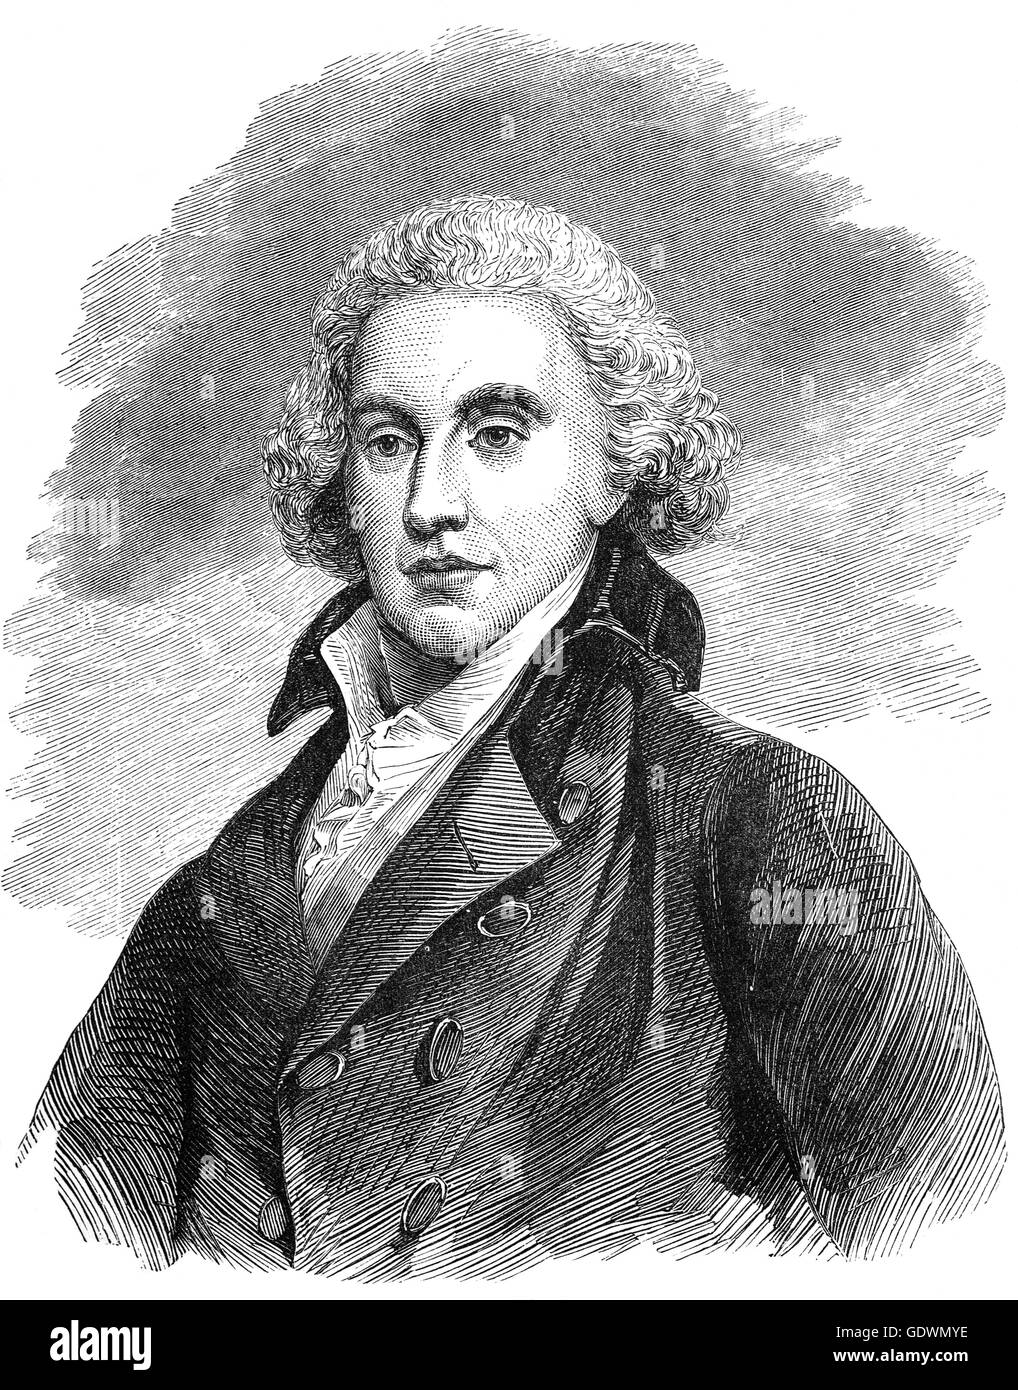 Henry Addington, Lord Sidmouth war (1757 – 1844) ein britischer Staatsmann, Premierminister von 1801 bis 1804 war. Er ist bekannt für den Erhalt von Amiens 1802 einen ungünstigen Frieden mit napoleonischen Frankreich das Ende der zweiten Koalition während französische revolutionäre Kriege gekennzeichnet Stockfoto